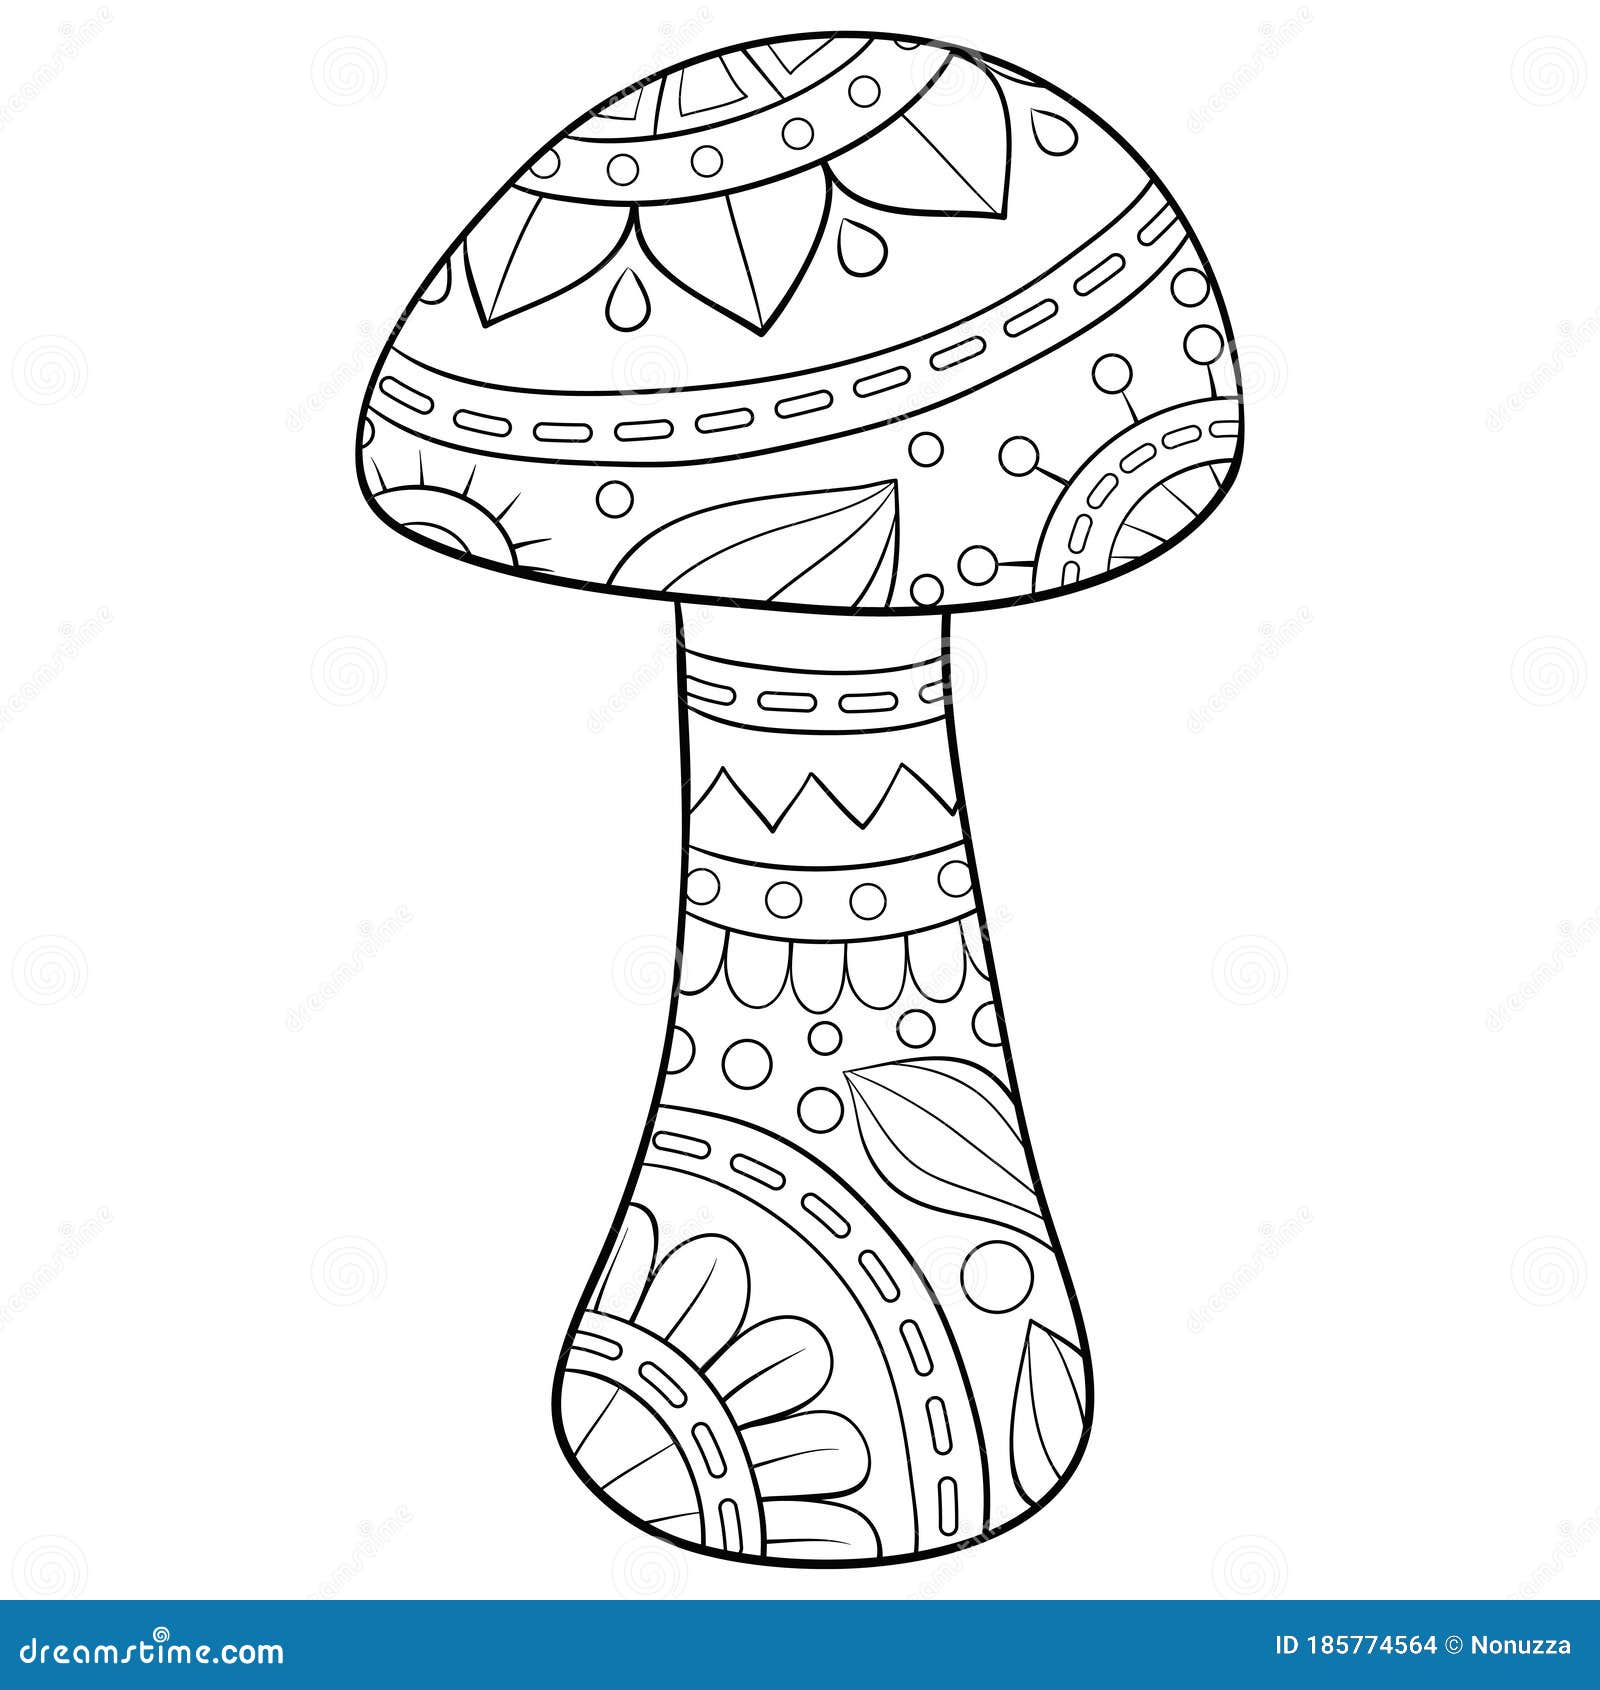 Mushroom Coloring Page Stock Illustrations – 20,20 Mushroom ...